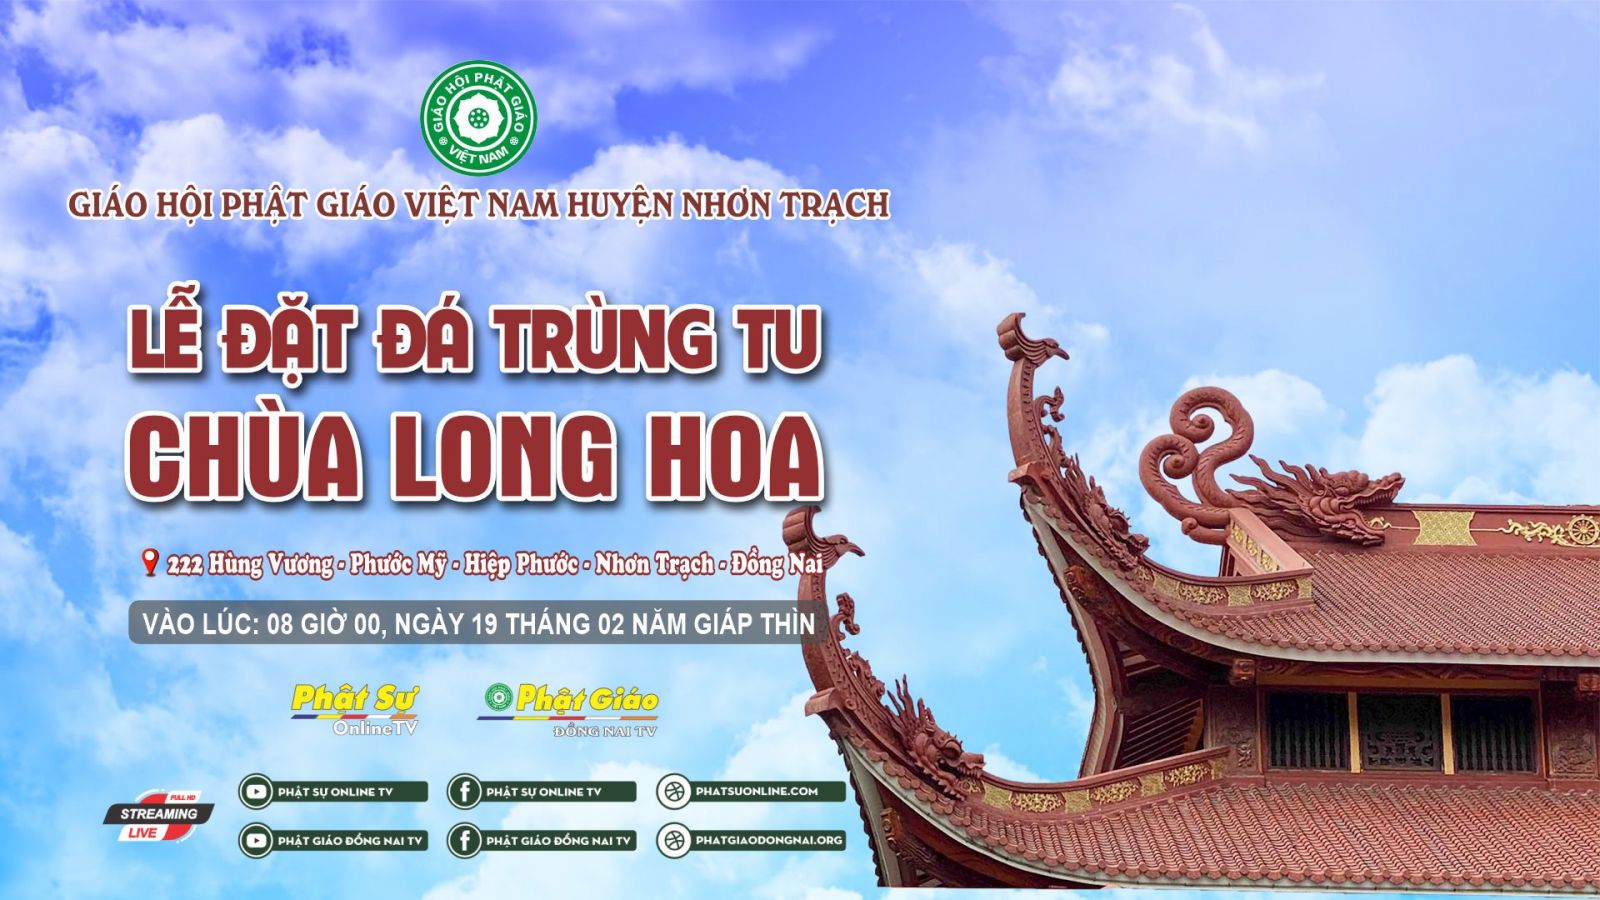 Trực tiếp: Trang nghiêm lễ đặt đá trùng tu Chùa Long Hoa - huyện Nhơn Trạch, Đồng Nai